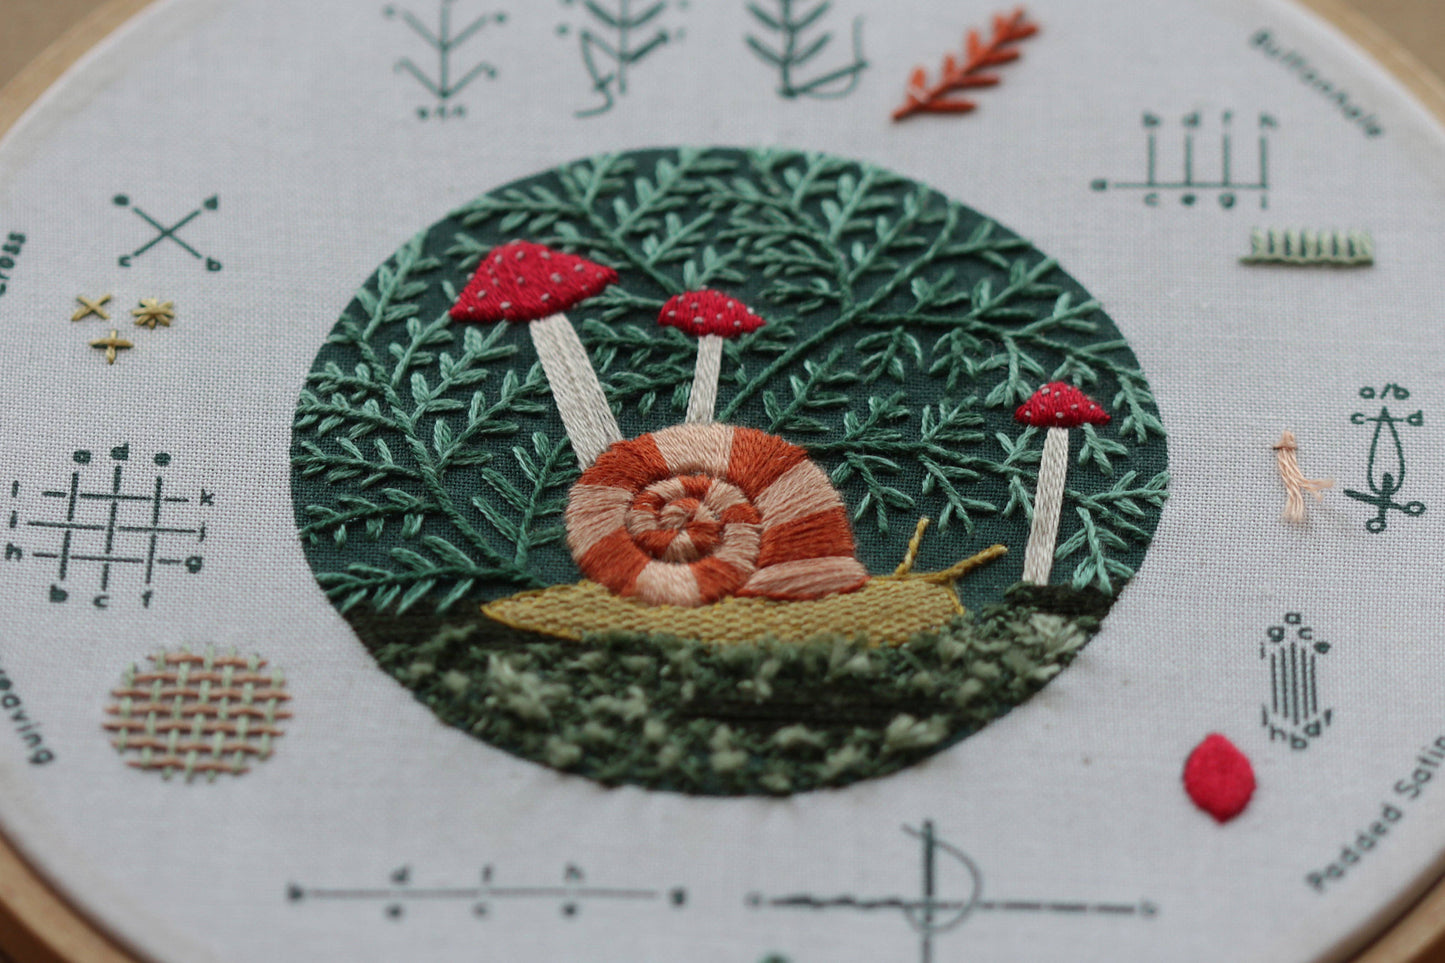 Forest Floor Sampler | Embroidery Kit